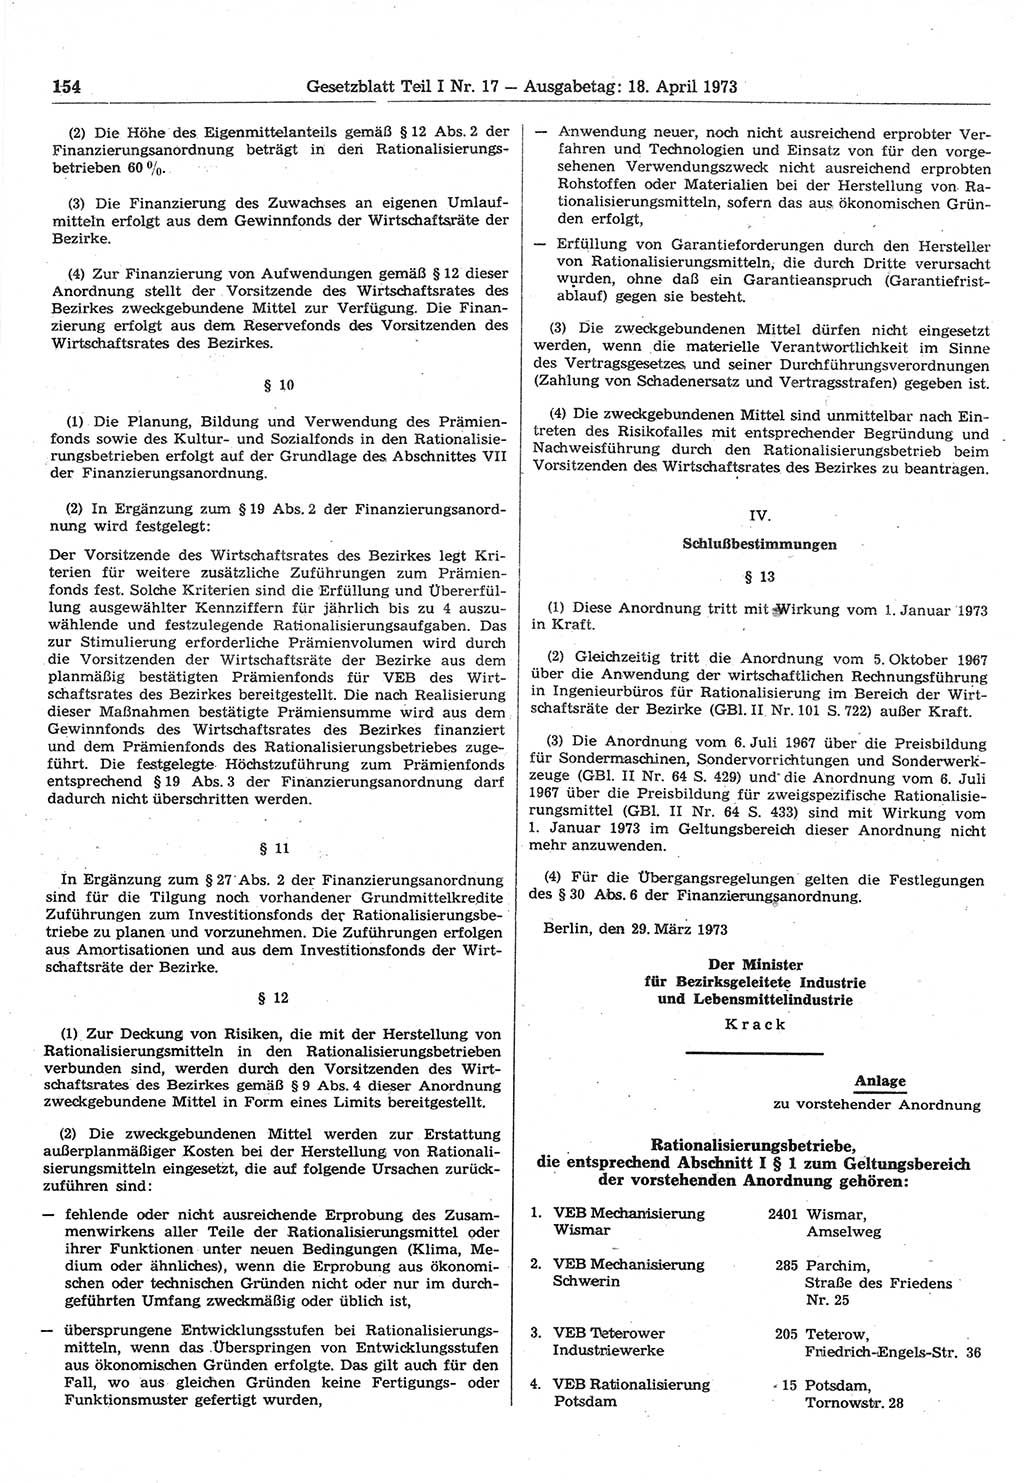 Gesetzblatt (GBl.) der Deutschen Demokratischen Republik (DDR) Teil Ⅰ 1973, Seite 154 (GBl. DDR Ⅰ 1973, S. 154)